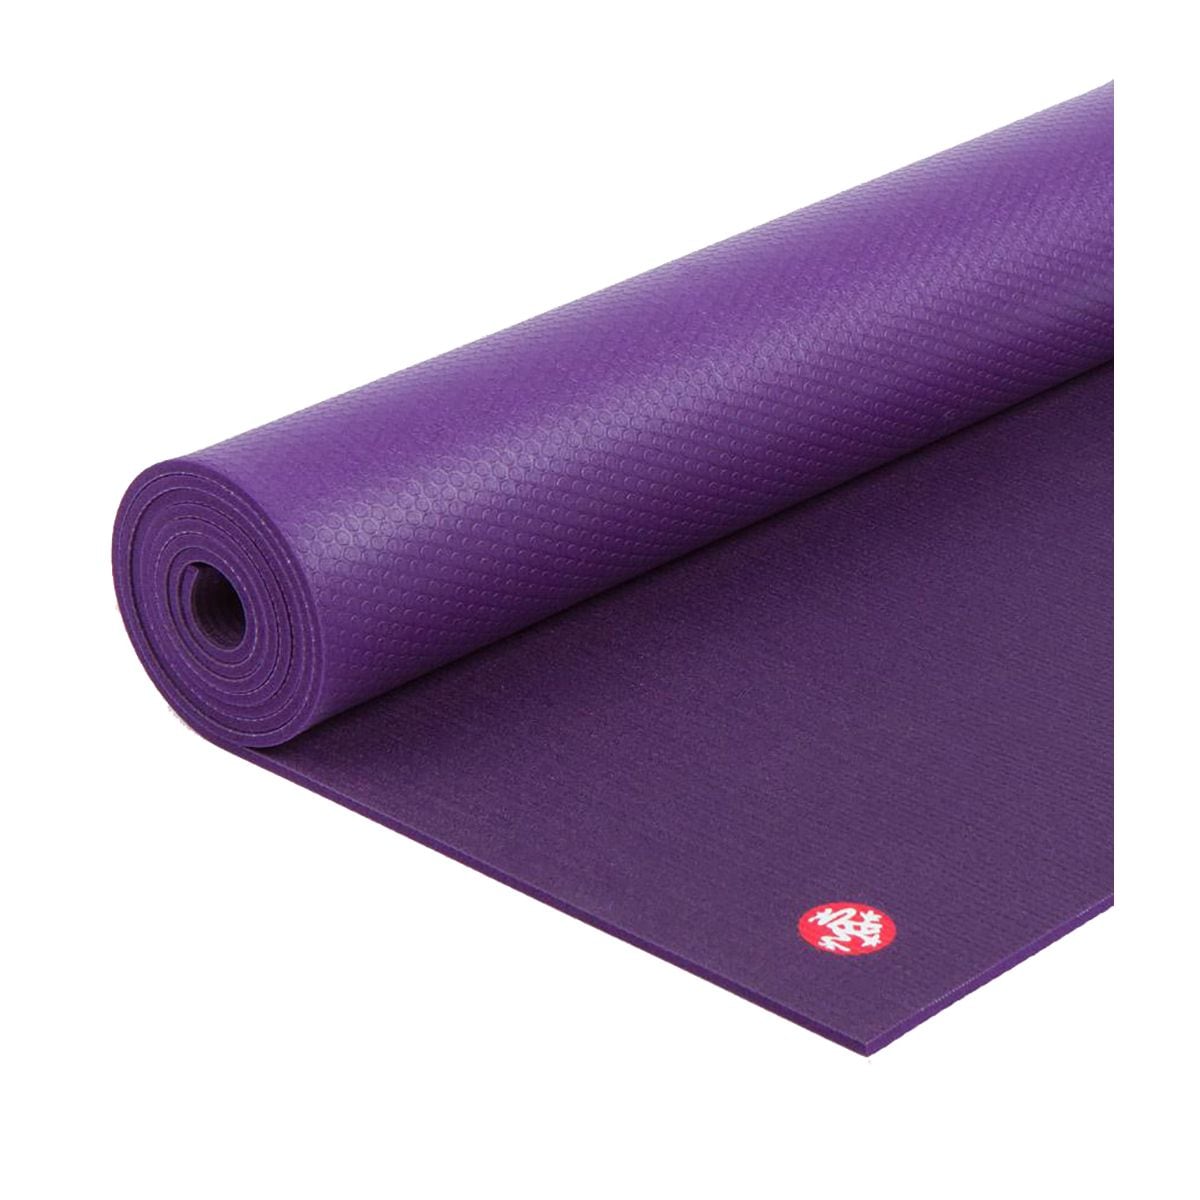 Manduka Pro Yoga mat 6mm. – Odyssey » I FEEL YOGA